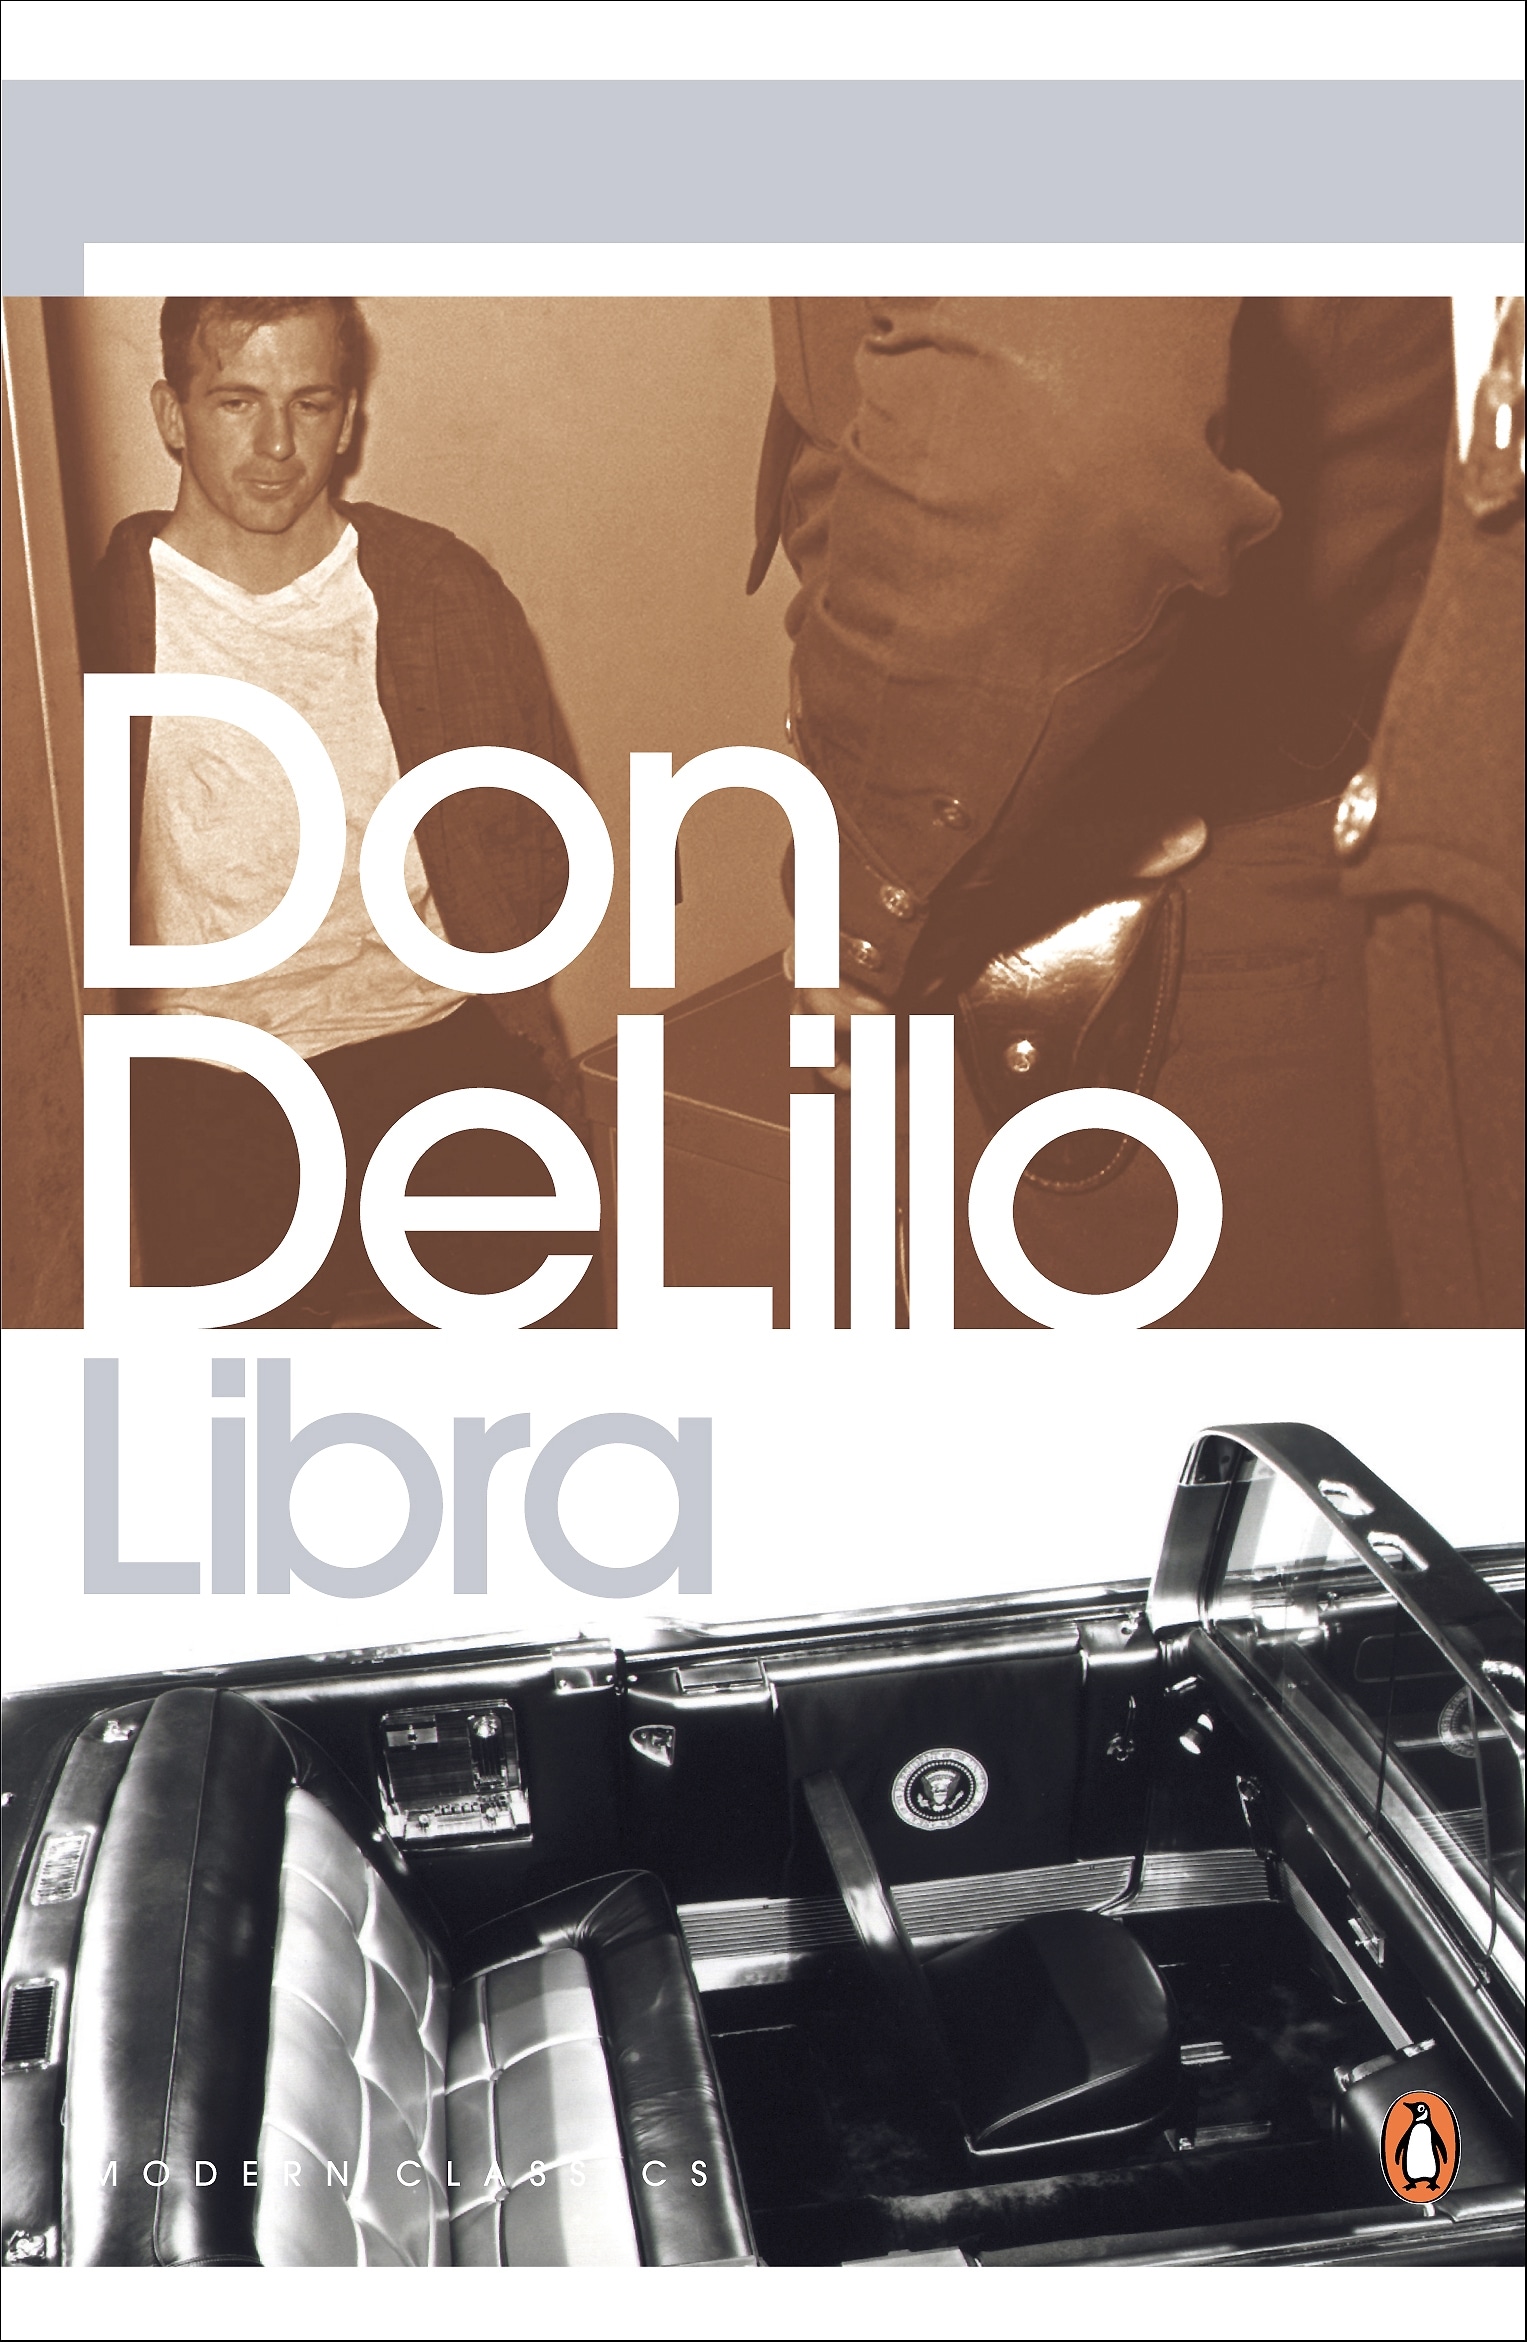 Book “Libra” by Don DeLillo — March 2, 2006